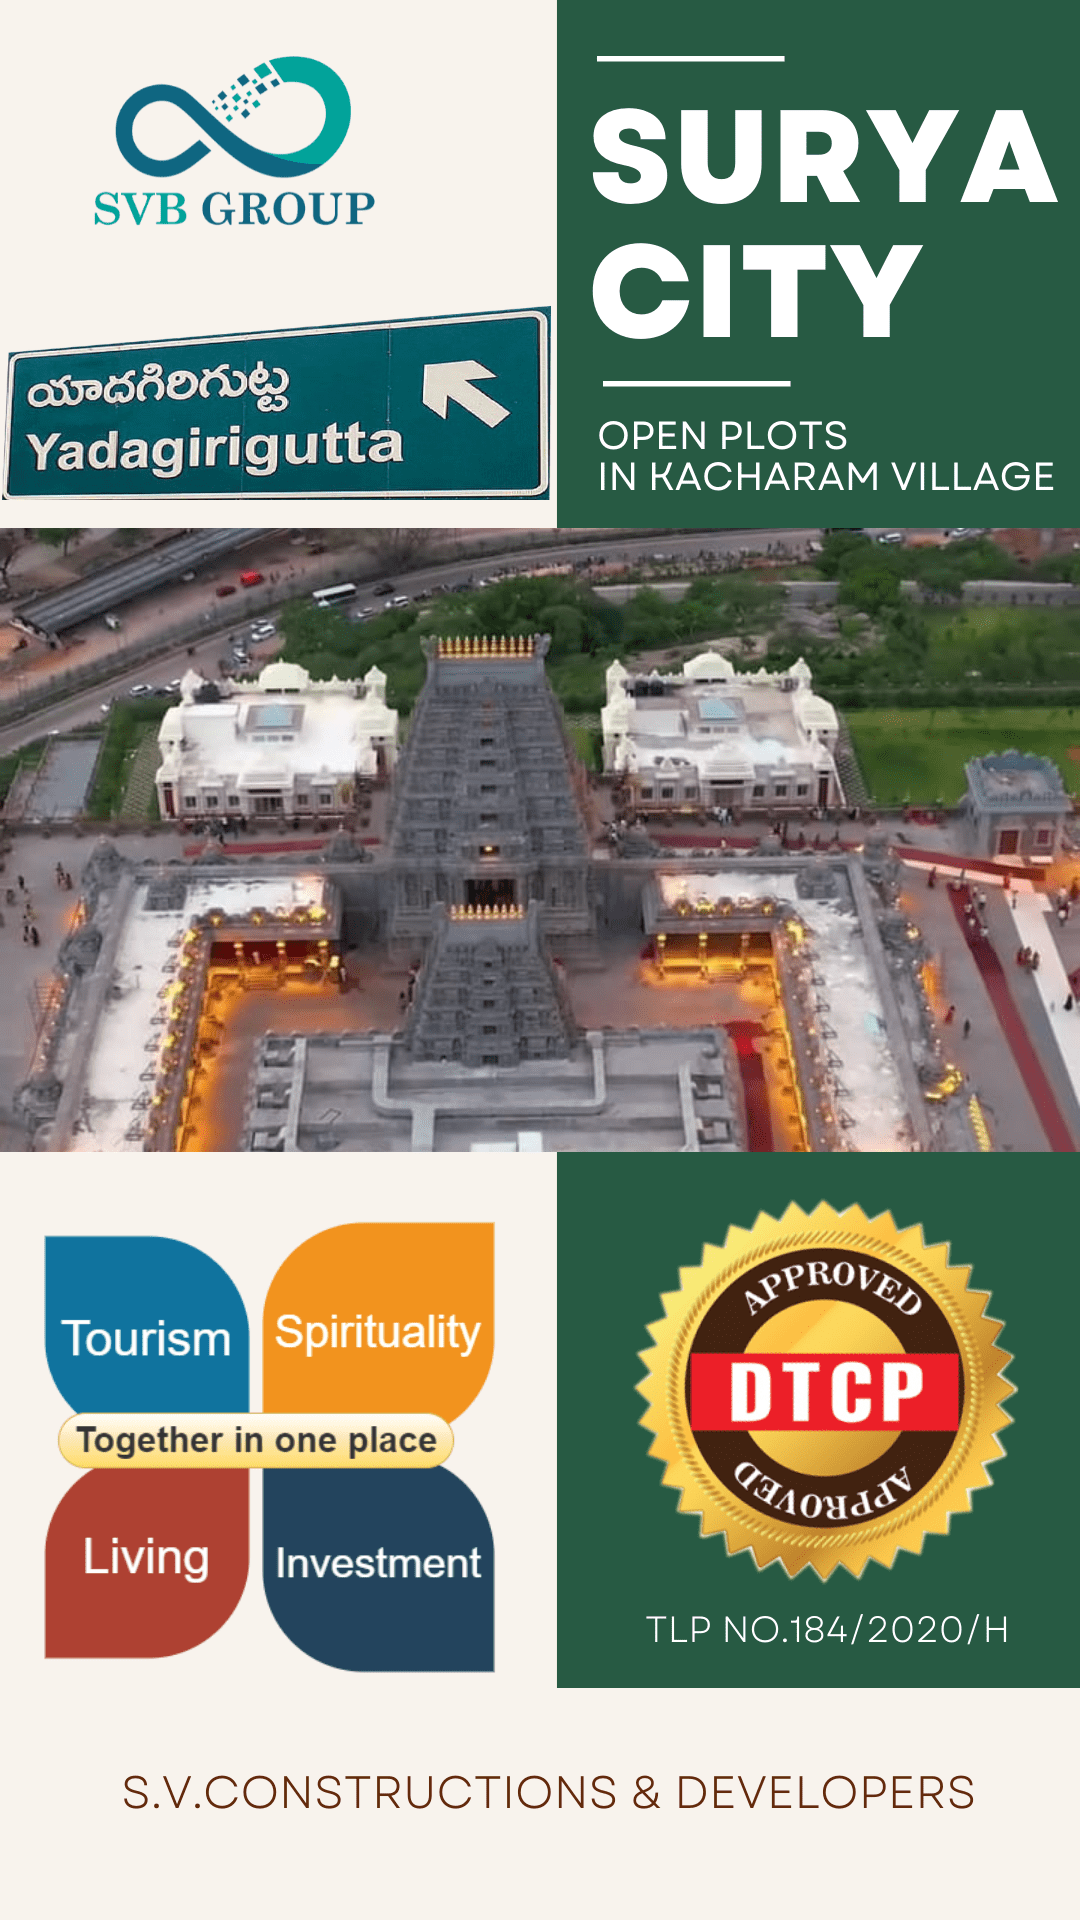 DTCP Approved Open Plots In Yadagirigutta